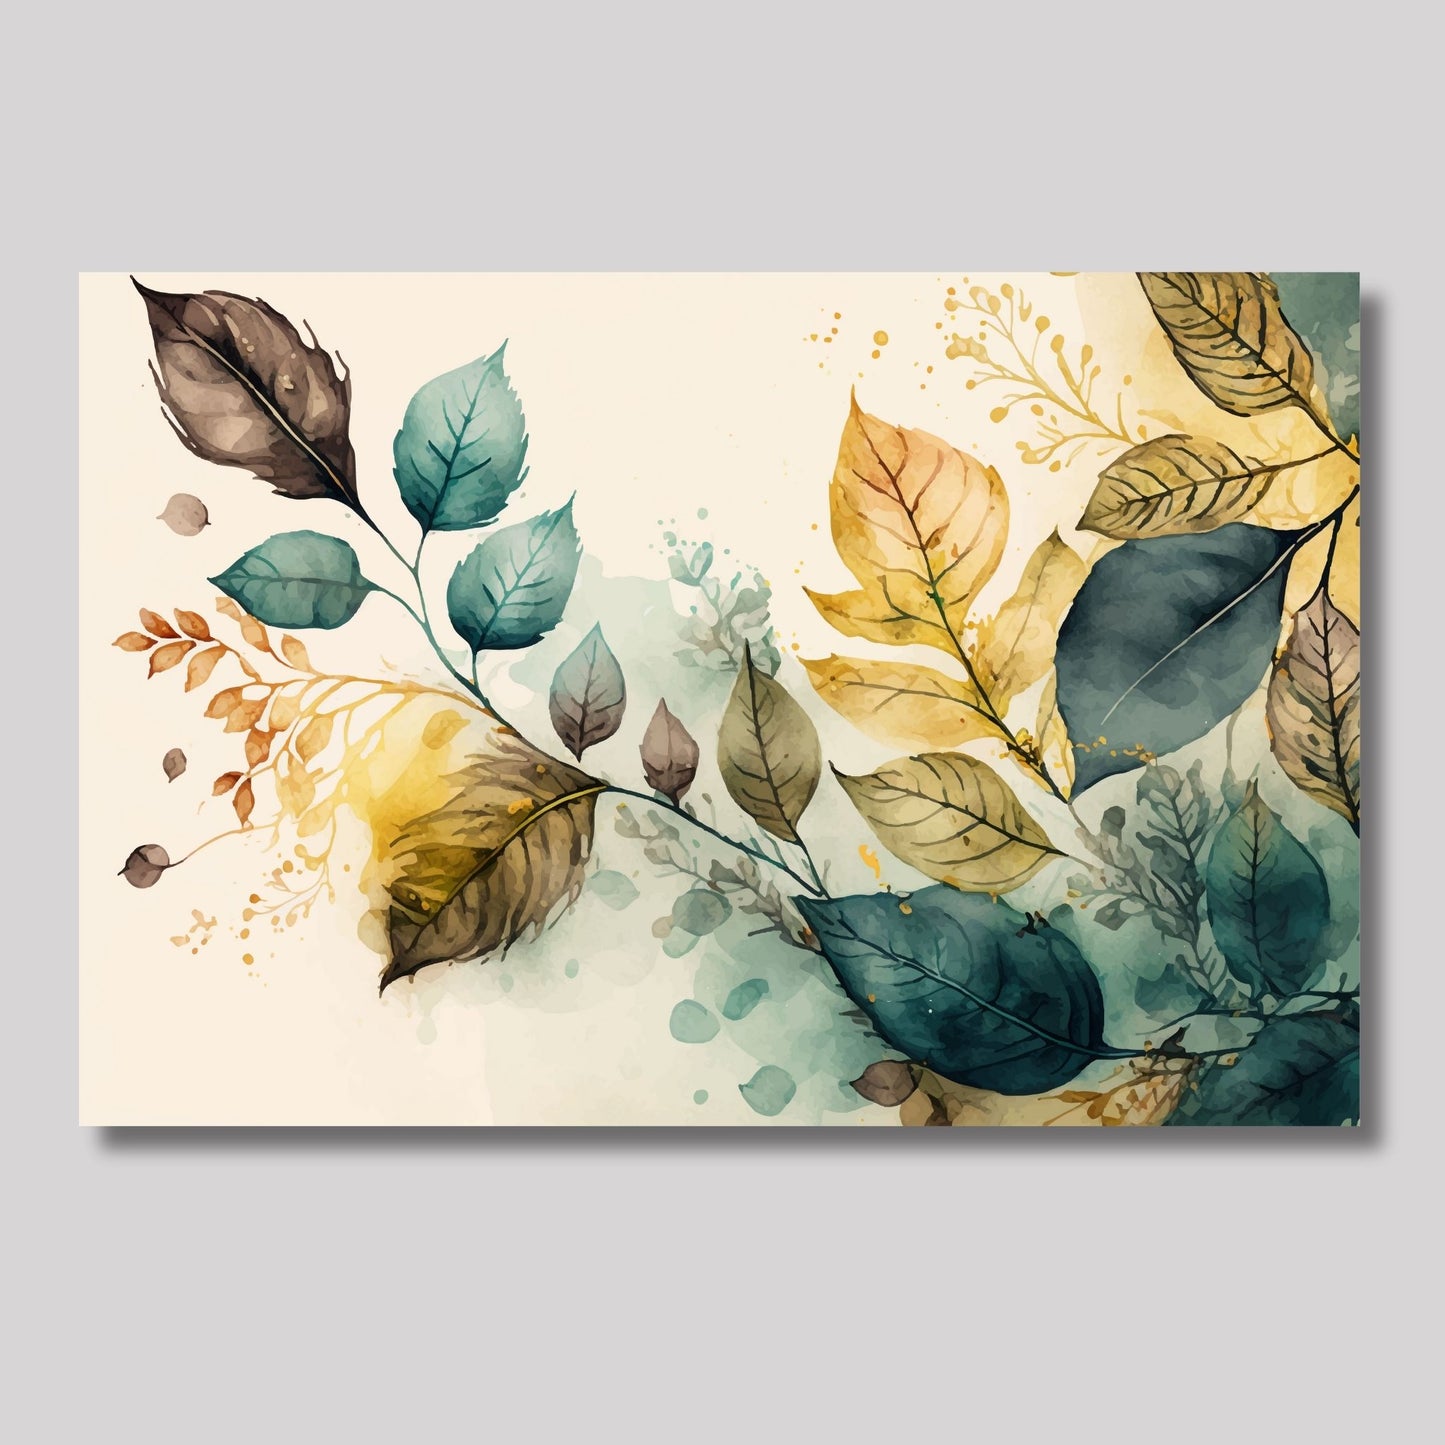 Grafisk abstrakt akvarell av bladverk i grønt, gult og brunt på en beroligende beige bakgrunn. Illustrasjonsfoto viser motivet på lerret.